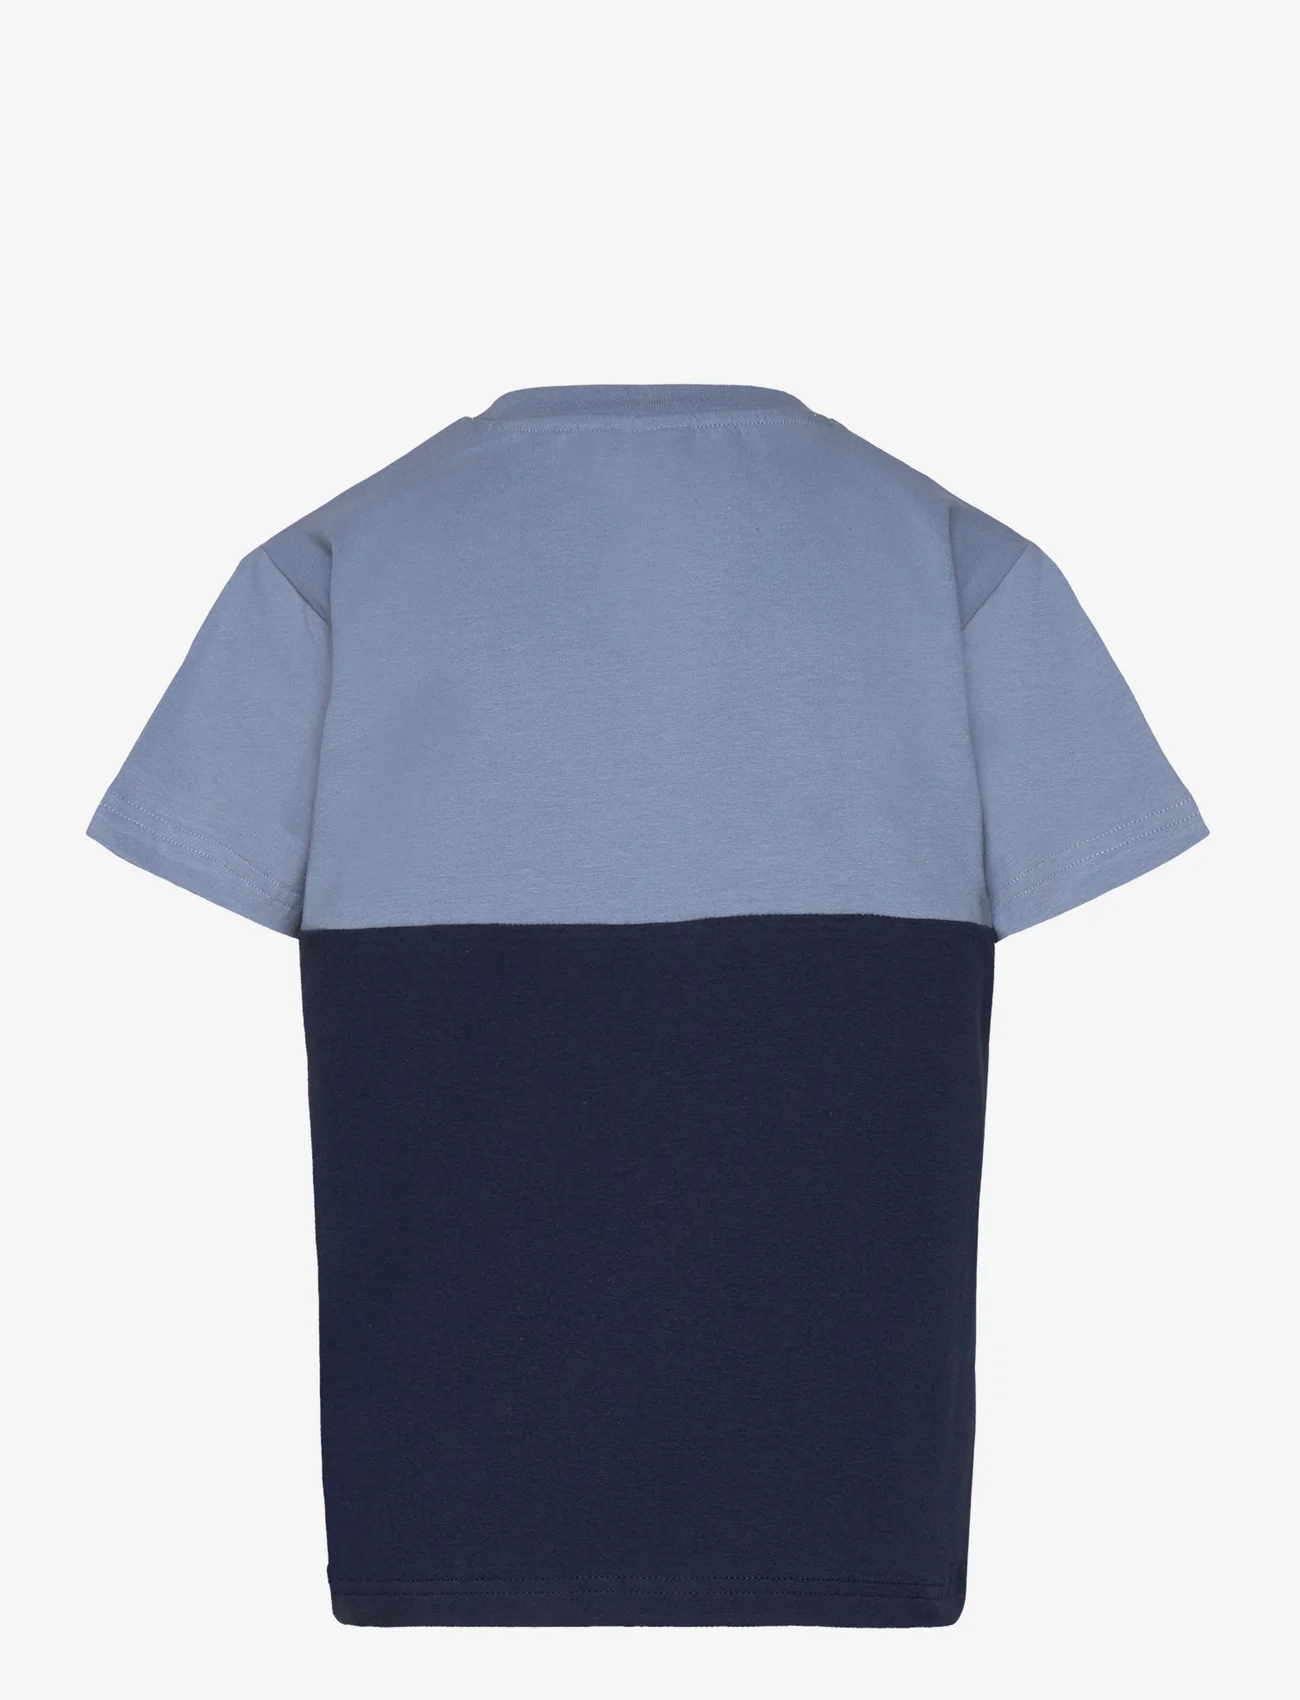 Hust & Claire - Arthur - T-shirt - krótki rękaw - faded blue - 1